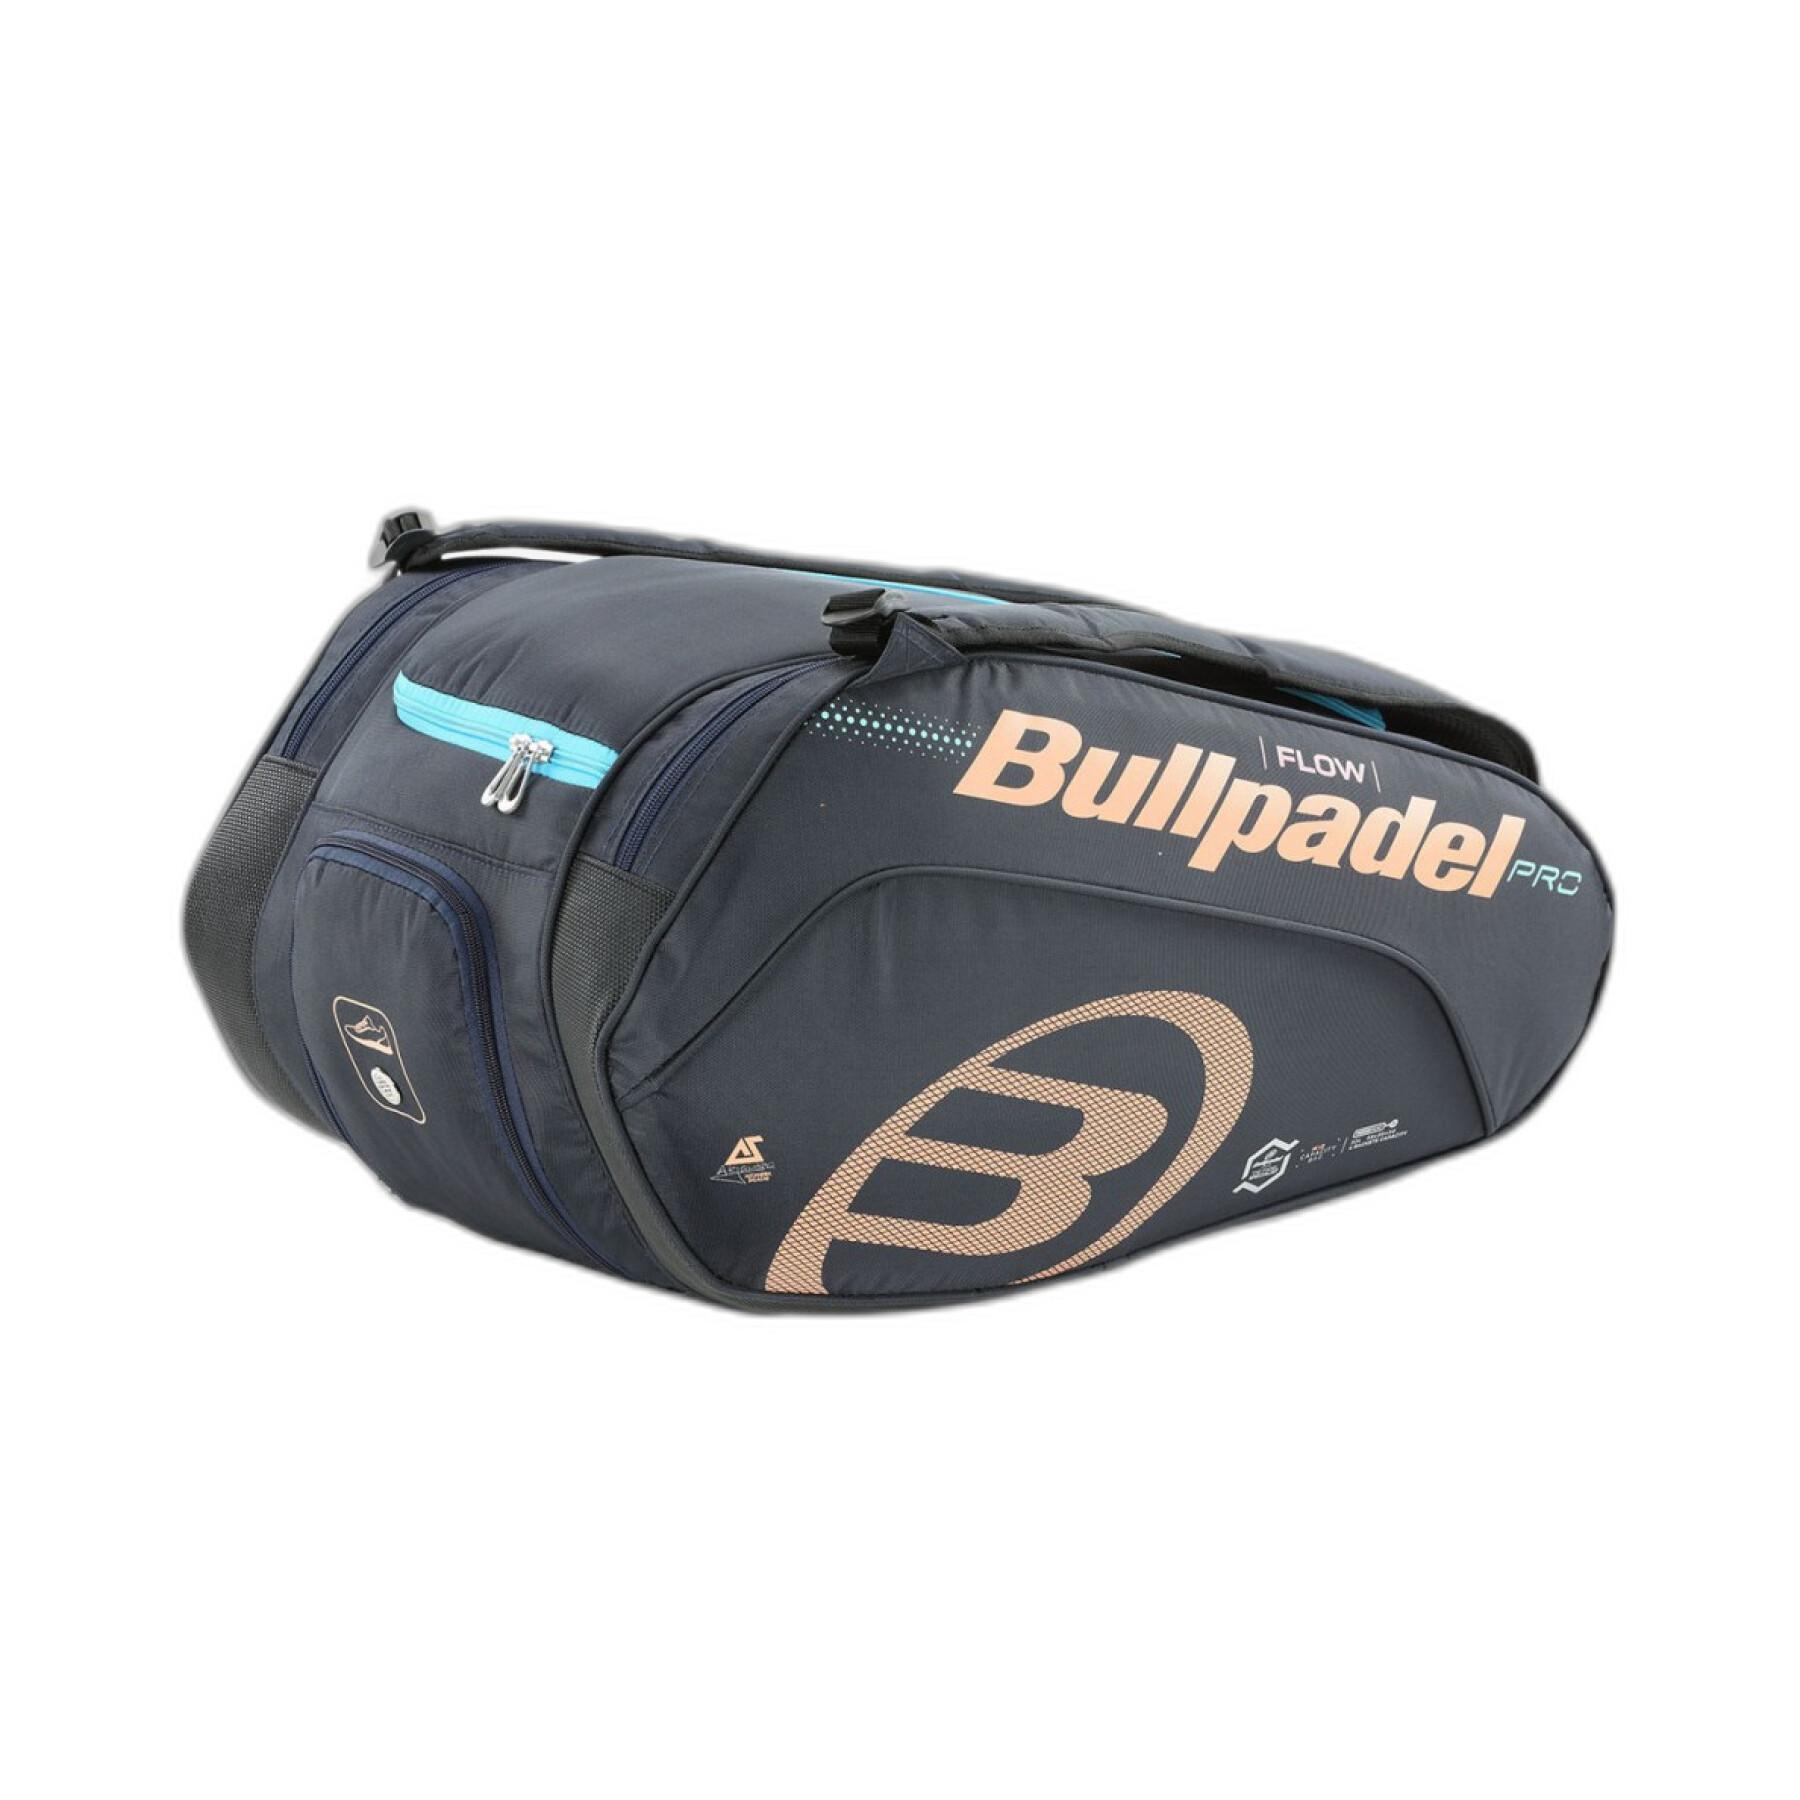 Paddle bag Bullpadel Bpp22006 Flow